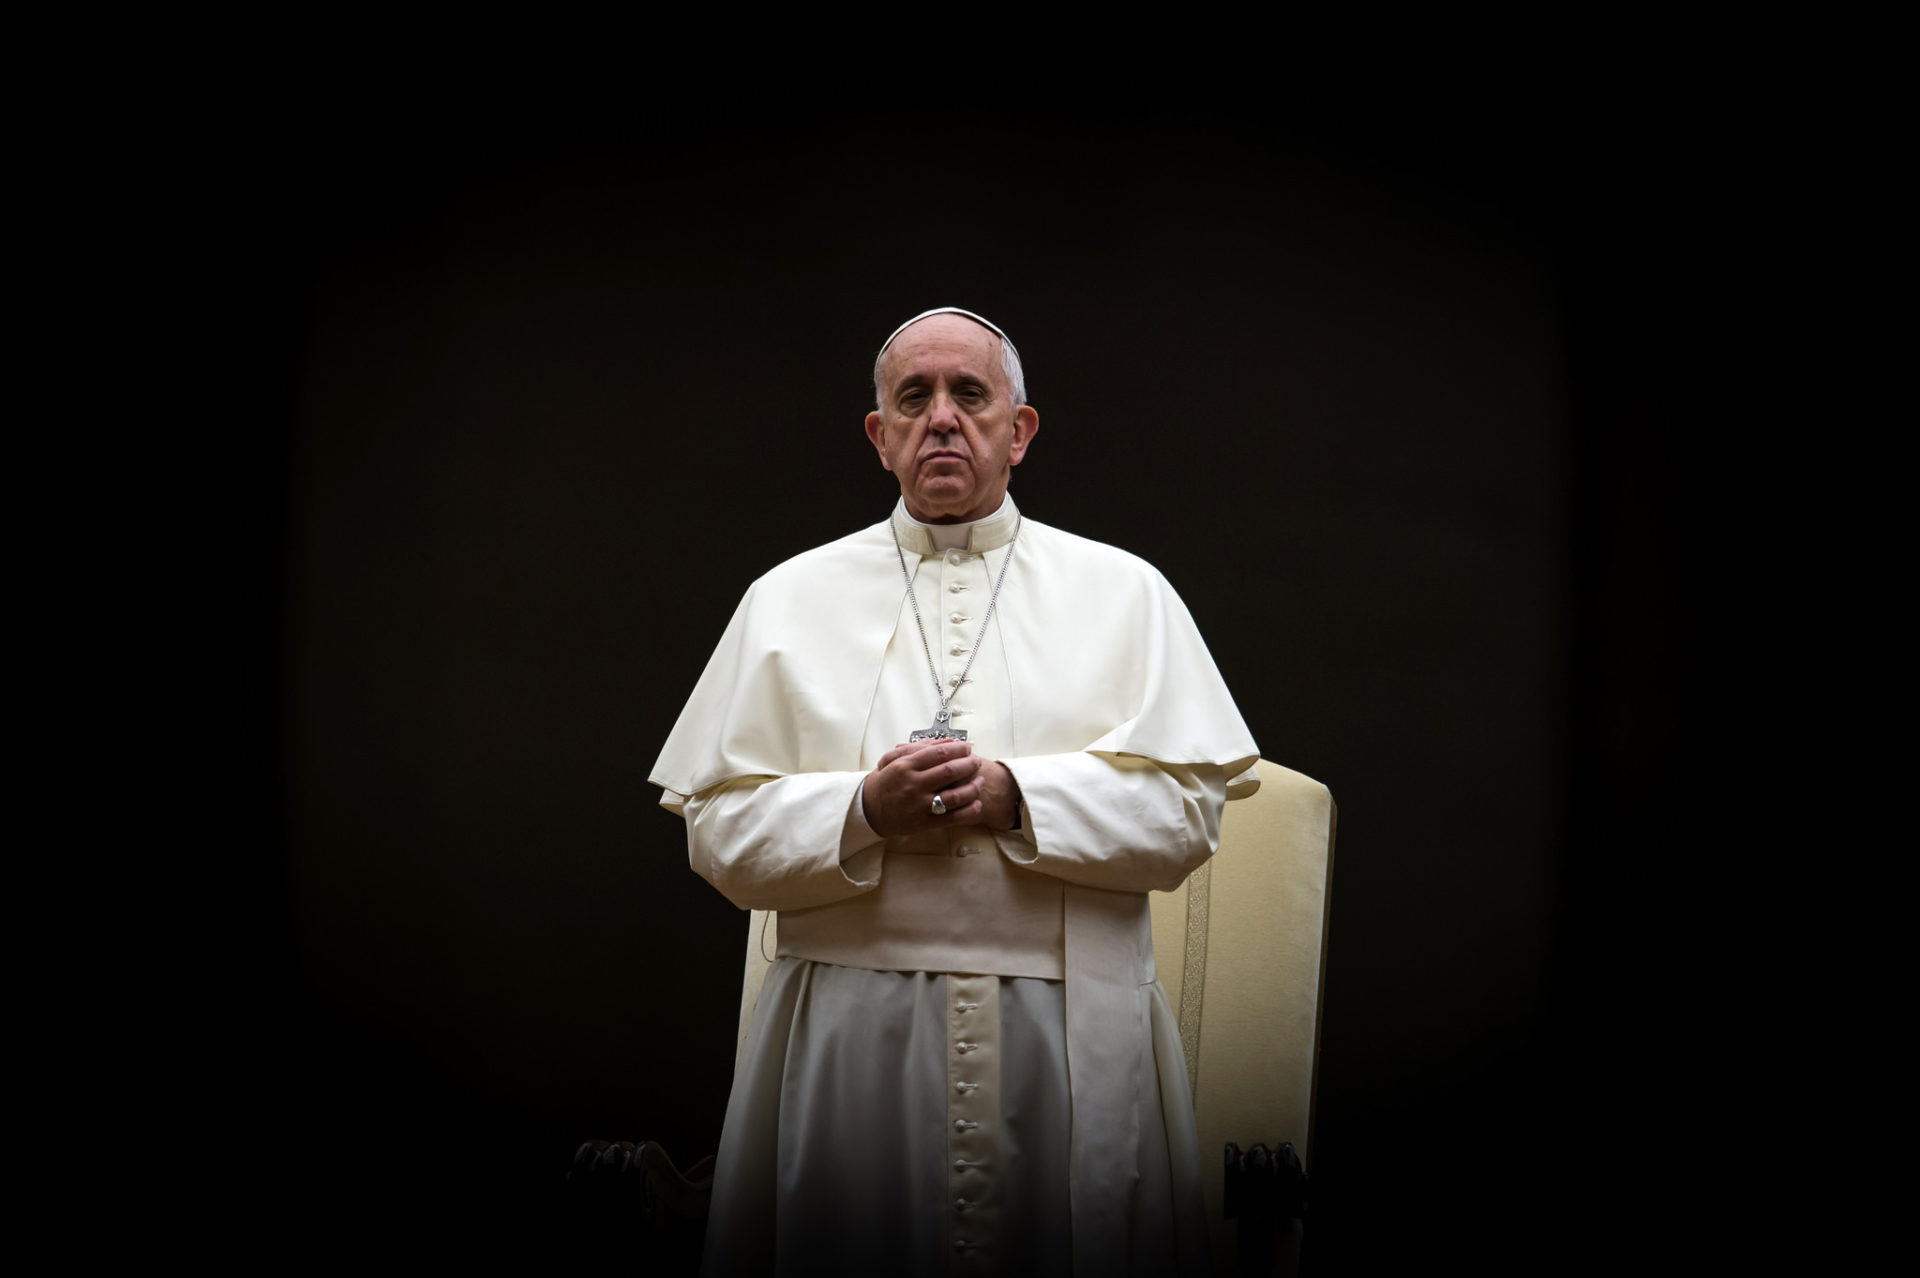 Le pape François s'oppose catégoriquement à la peine de mort (Photo: Catholic Church England/Flickr/CC BY-NC-SA 2.0)